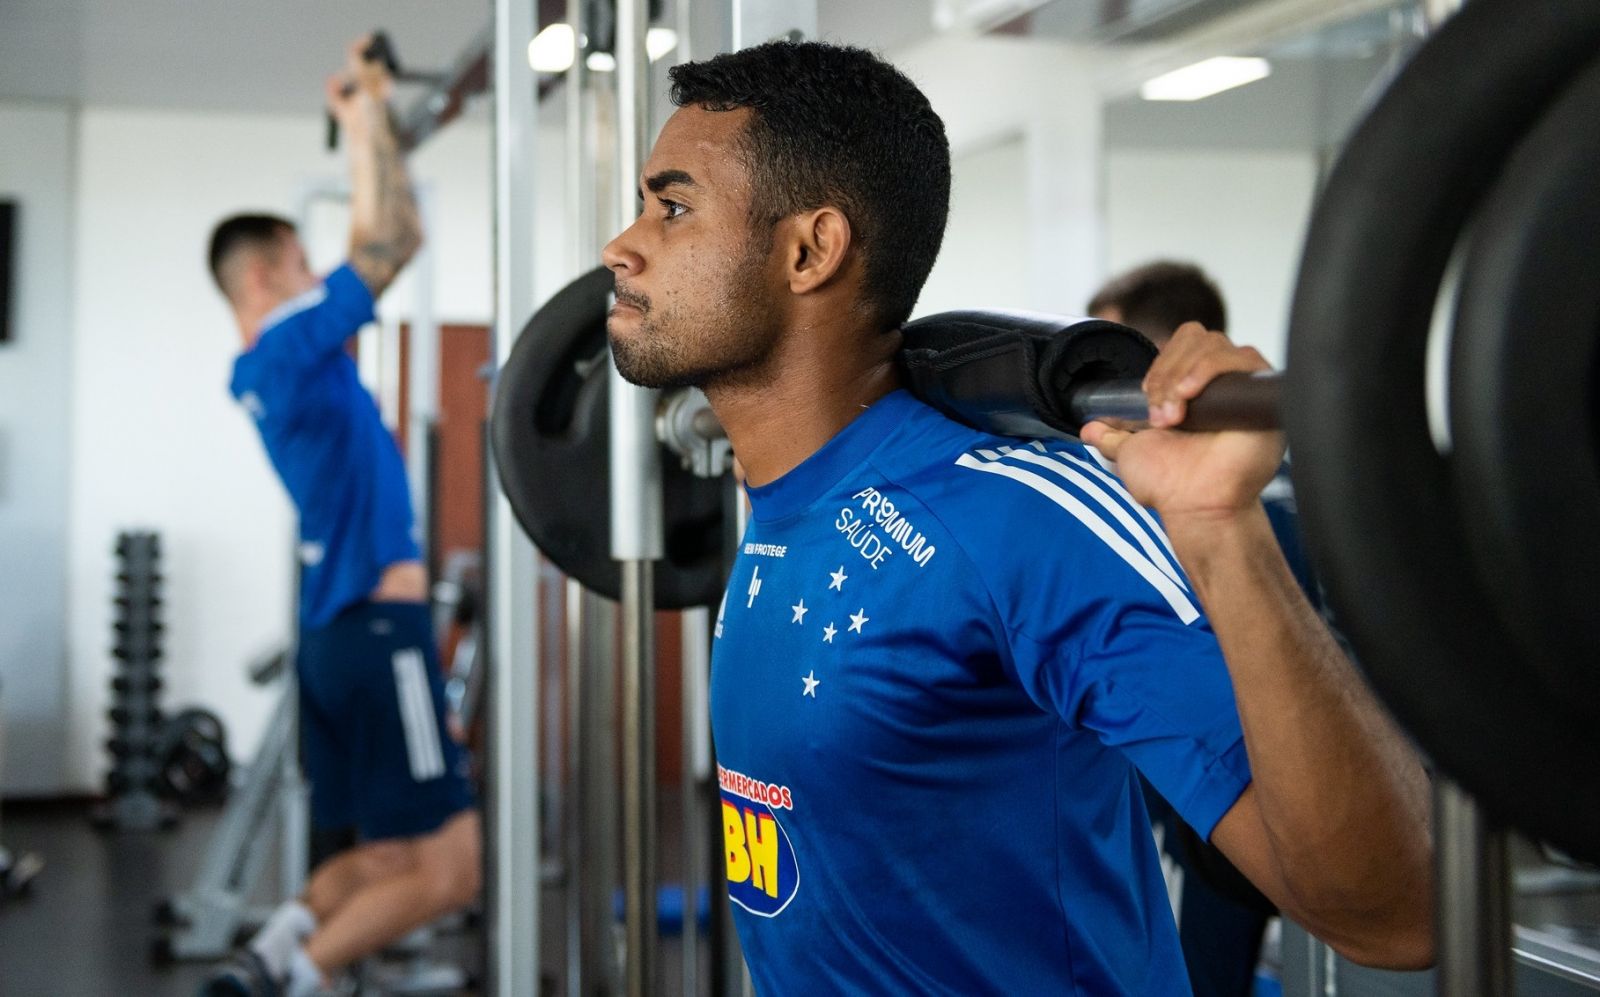 Jogadores treinam em hotel antes de retorno a BH; Manoel celebra reestreia pelo Cruzeiro